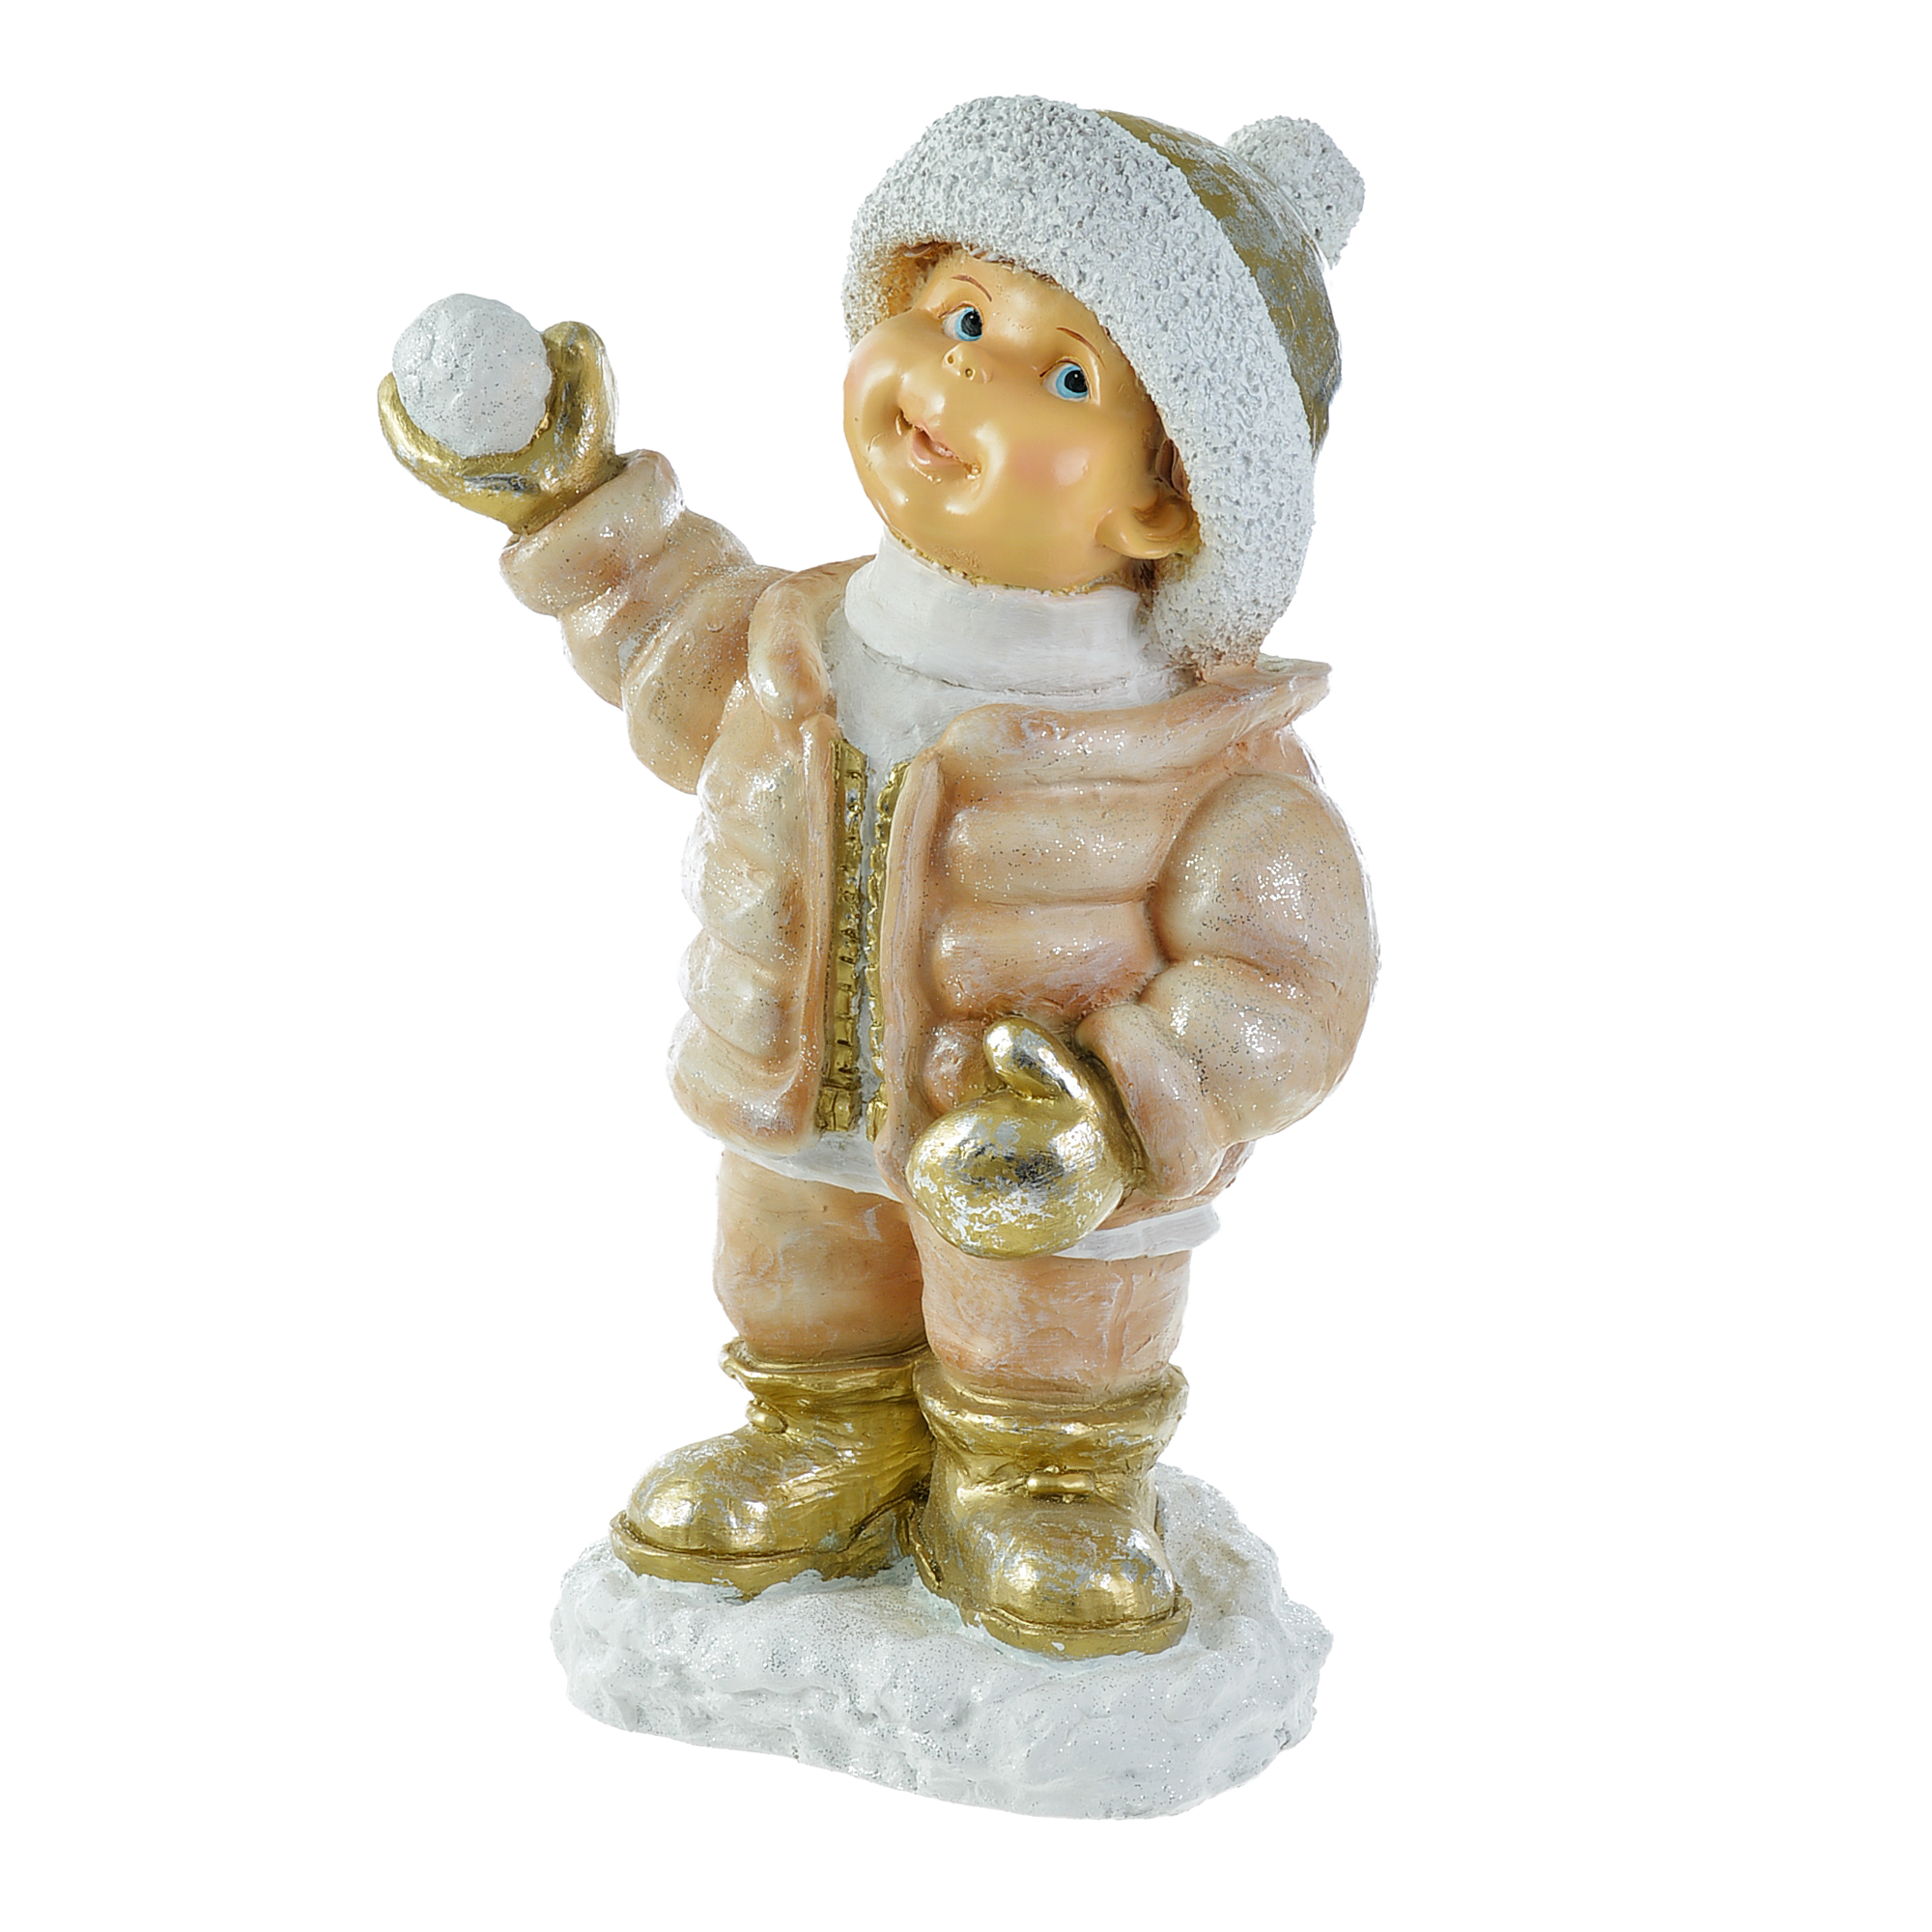 Мальчик в шапке играет в снежки н-65см Тпк полиформ мальчик с уткой бронза тпк полиформ